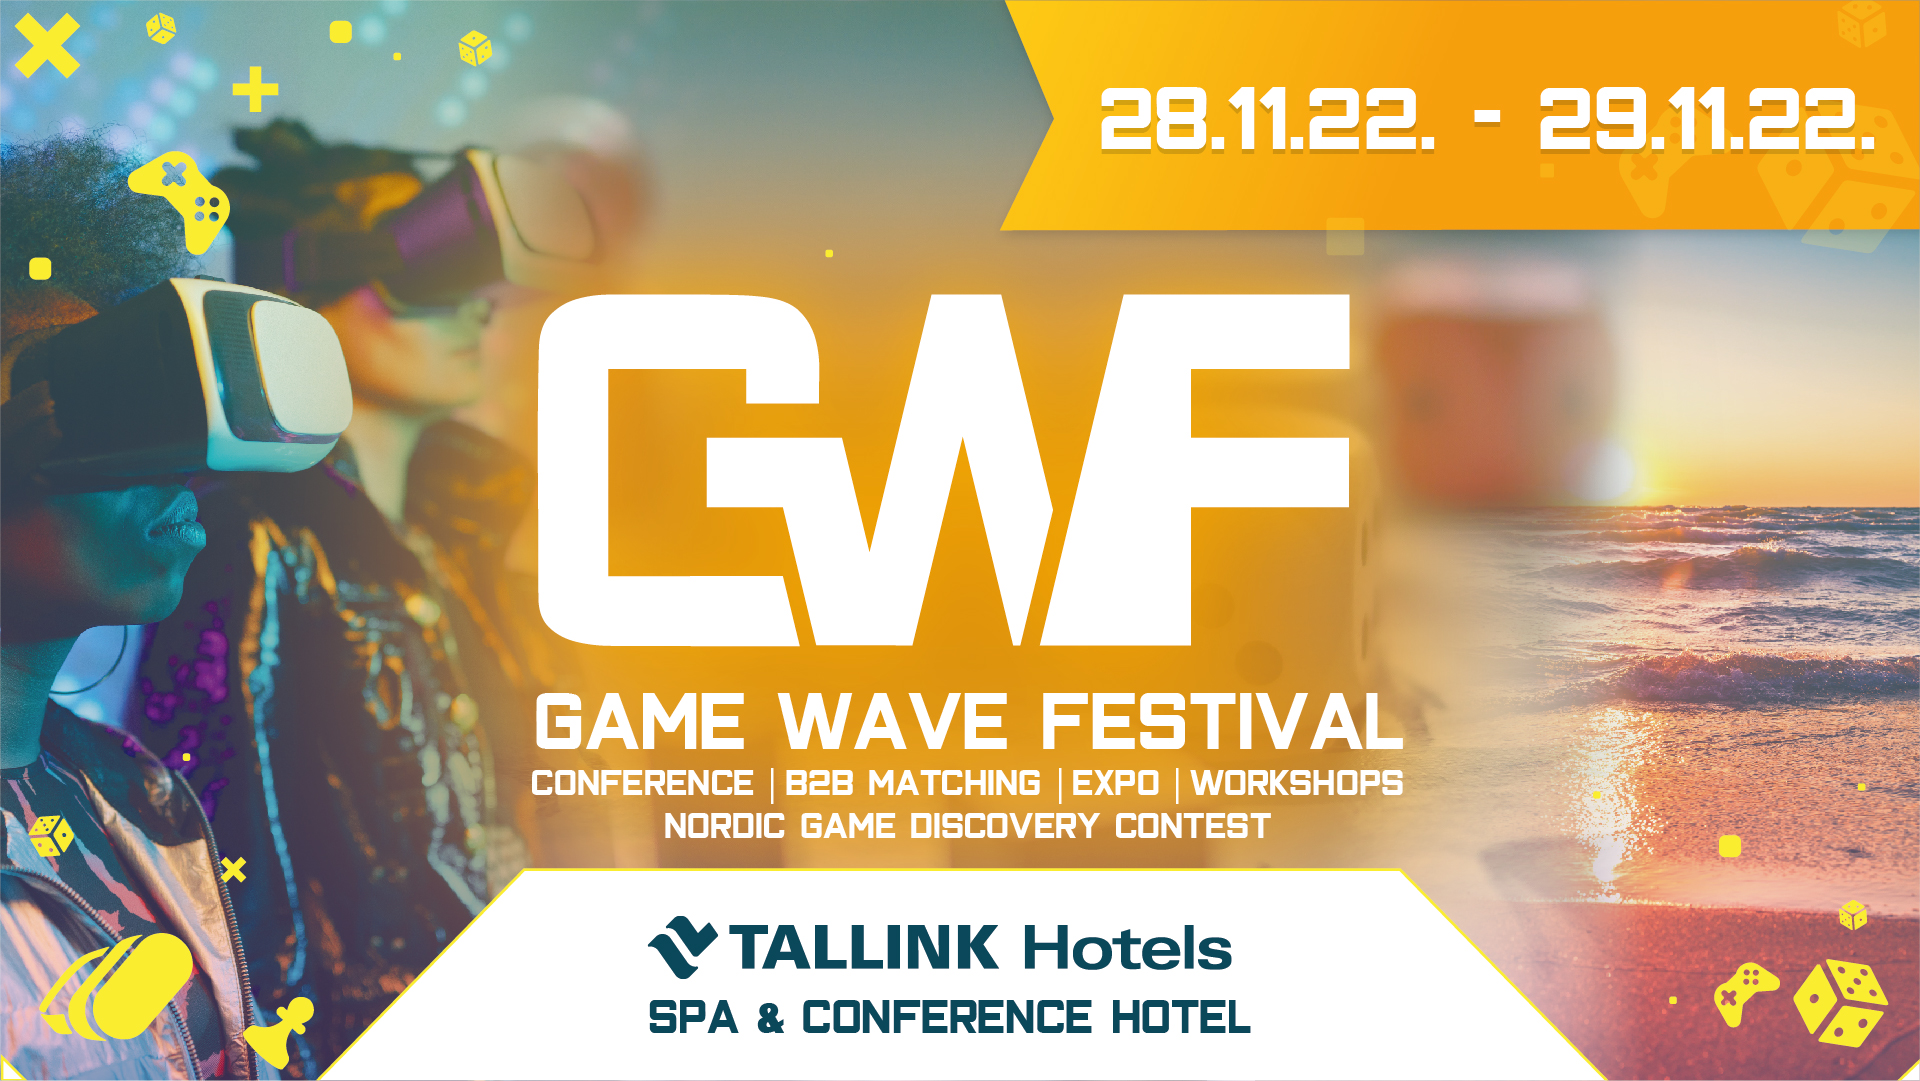 Game Wave Festival November 28-29 in Tallinn